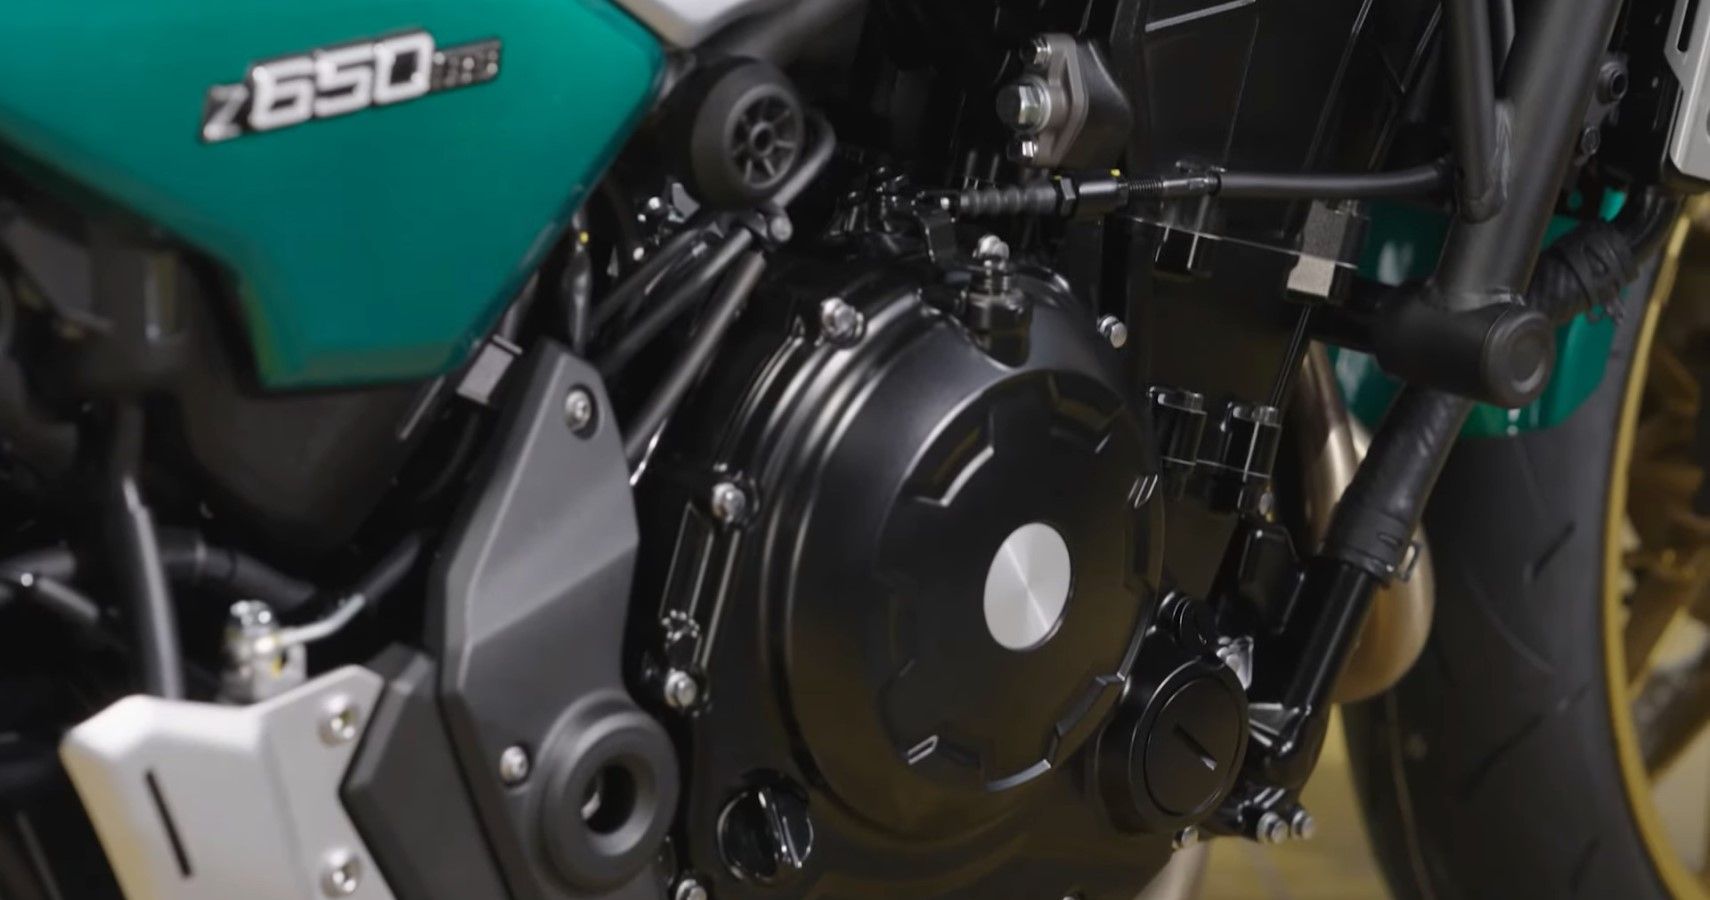 2022 Kawasaki Z650RS engine close-up view